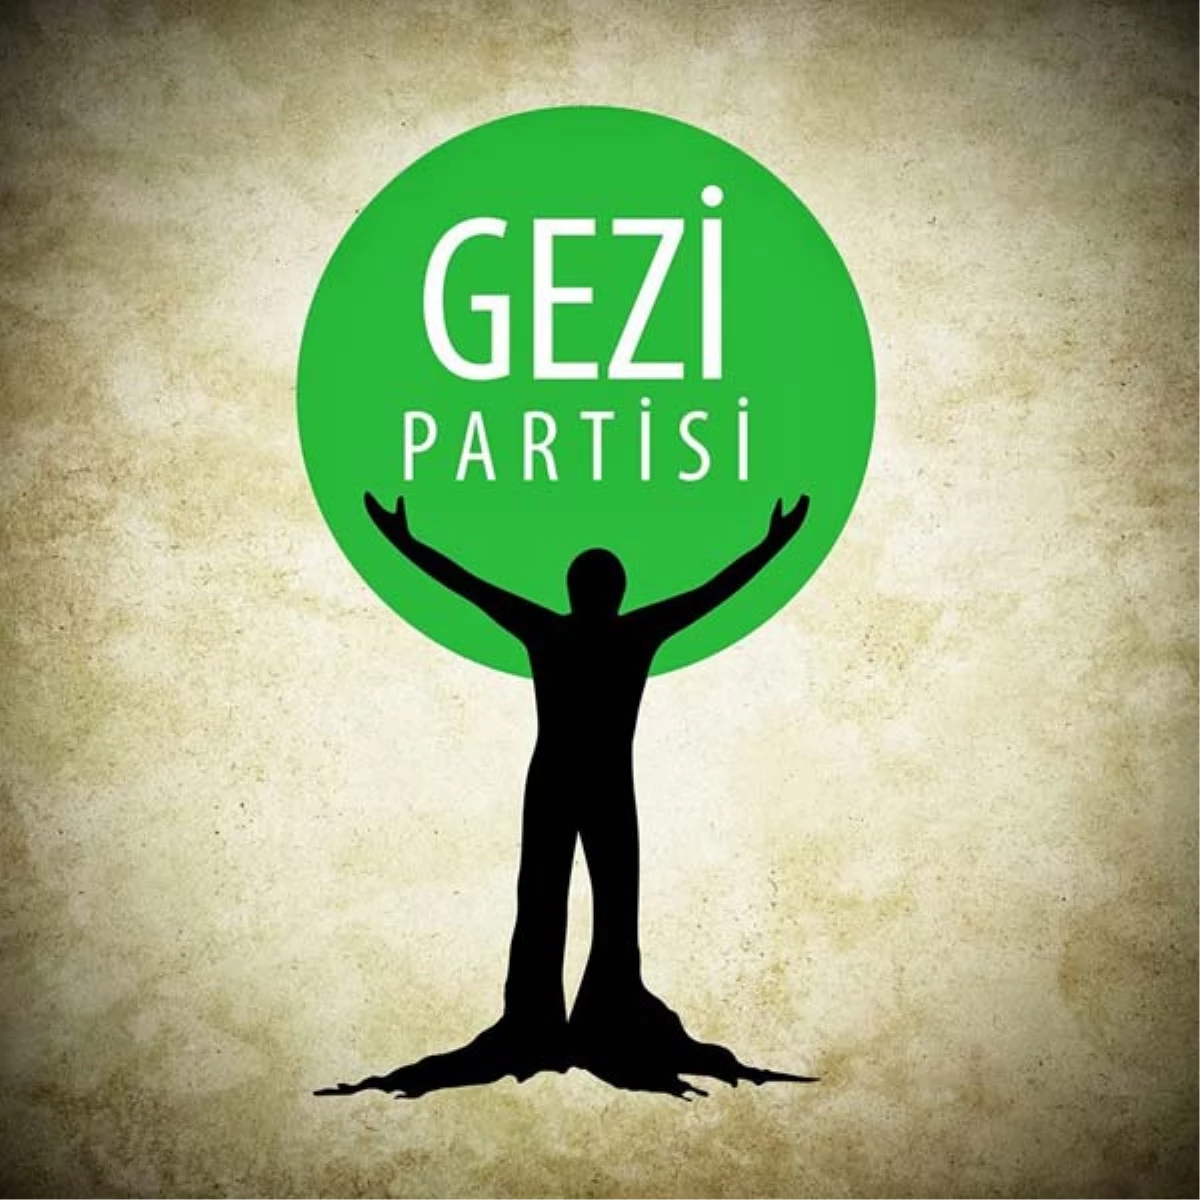 Gezi Partisi: Bu Daha Başlangıç, Gerçek Demokrasiye Merhaba